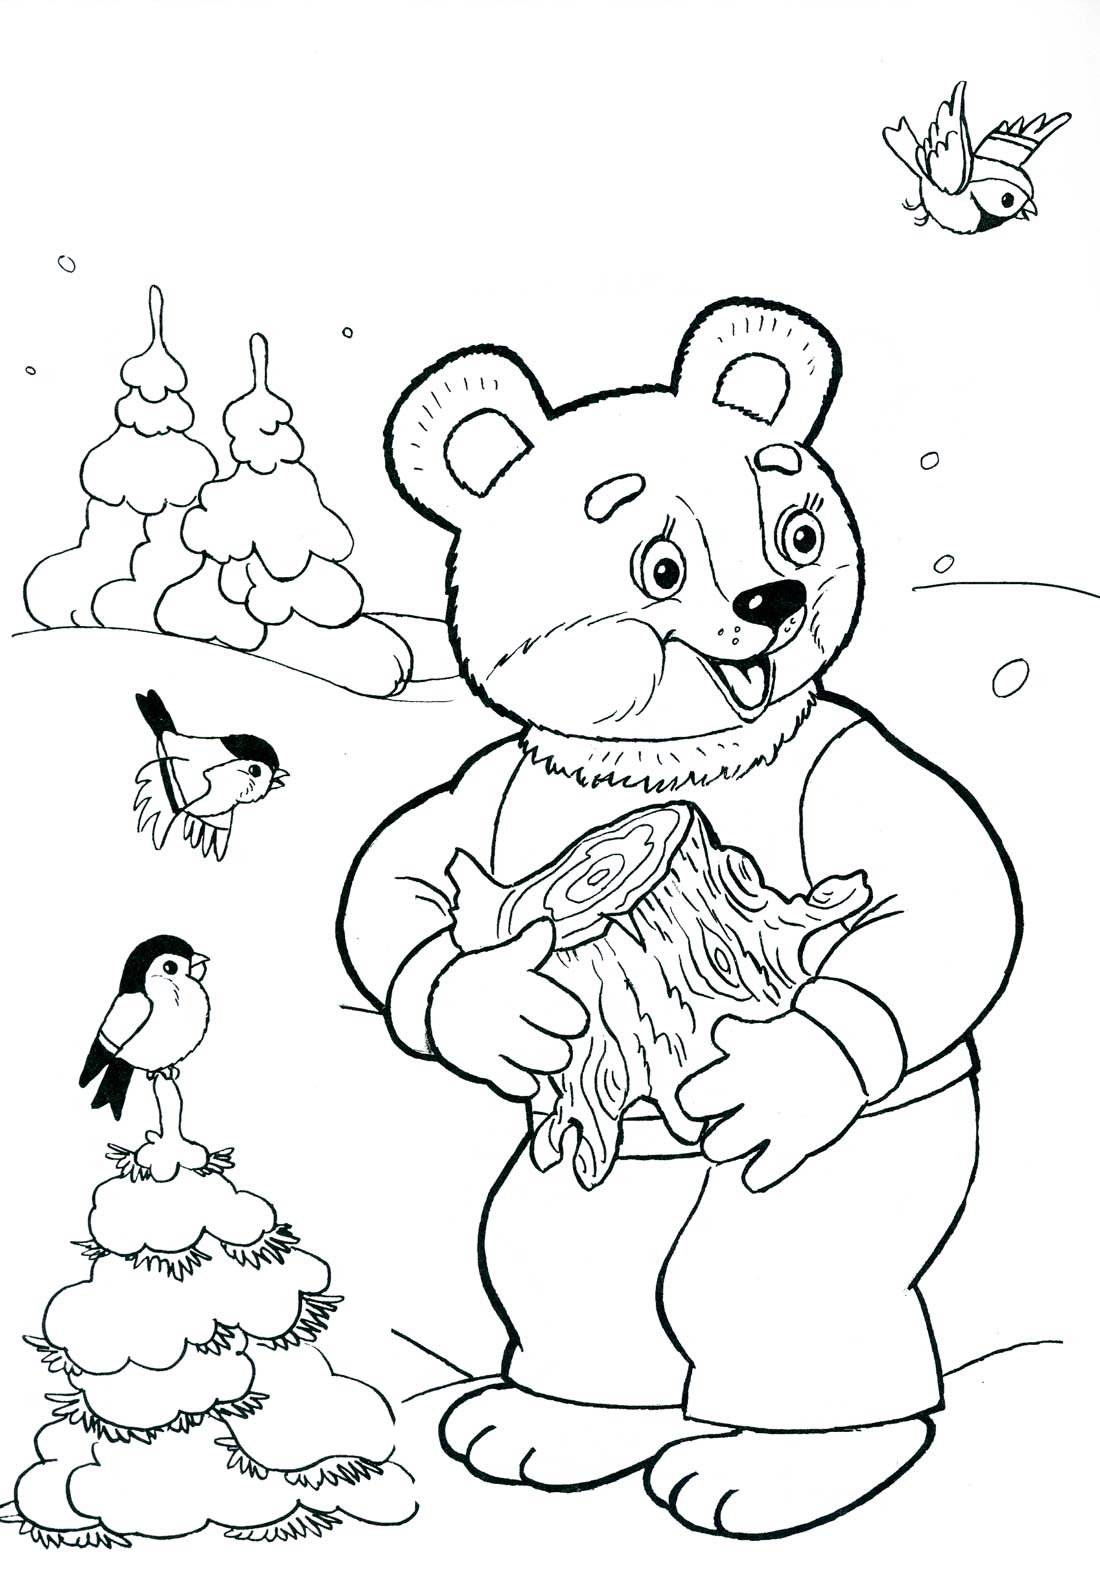 Описание медведя для ребенка 5 лет